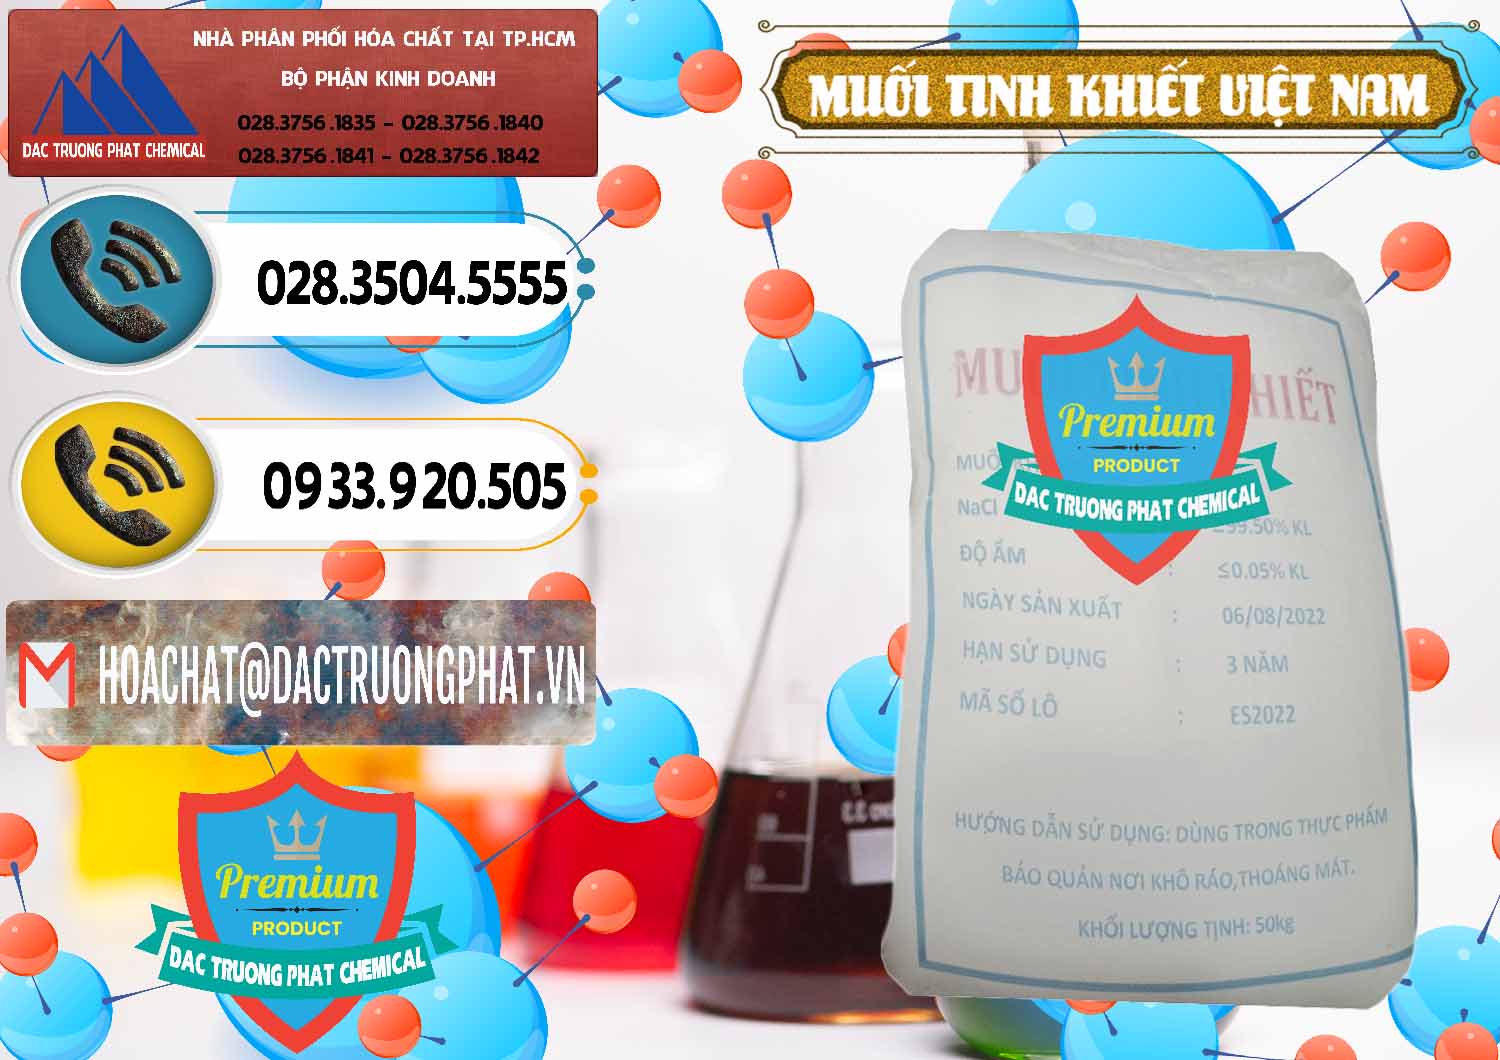 Cty chuyên bán - cung cấp Muối NaCL – Sodium Chloride Việt Nam - 0384 - Cty kinh doanh - phân phối hóa chất tại TP.HCM - hoachatdetnhuom.vn